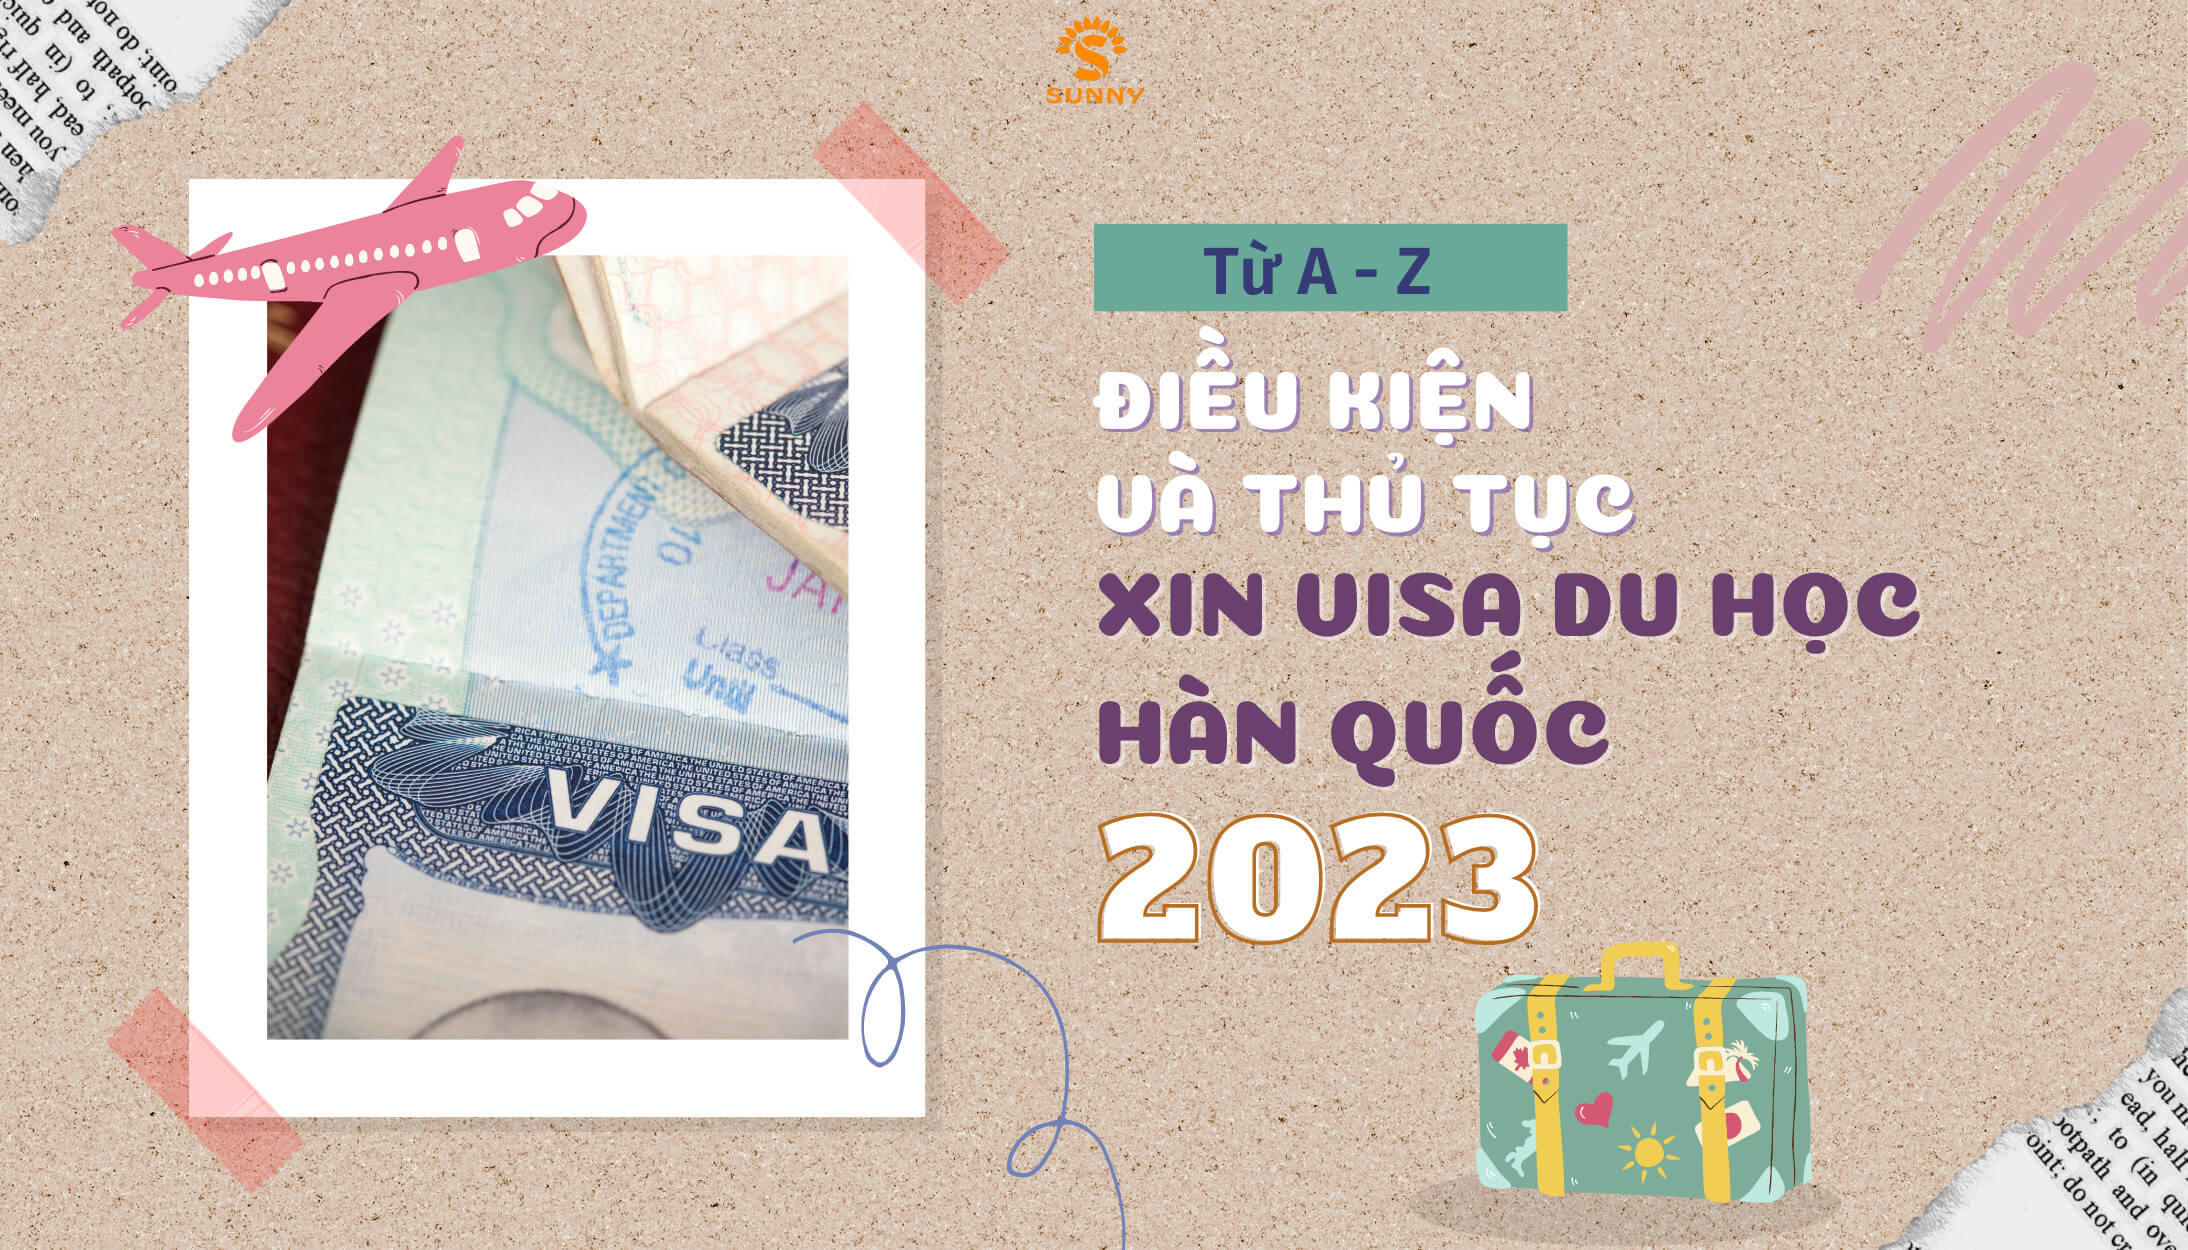 Xin Visa du học Hàn Quốc 2023: Điều kiện, hồ sơ, thủ tục chi tiết